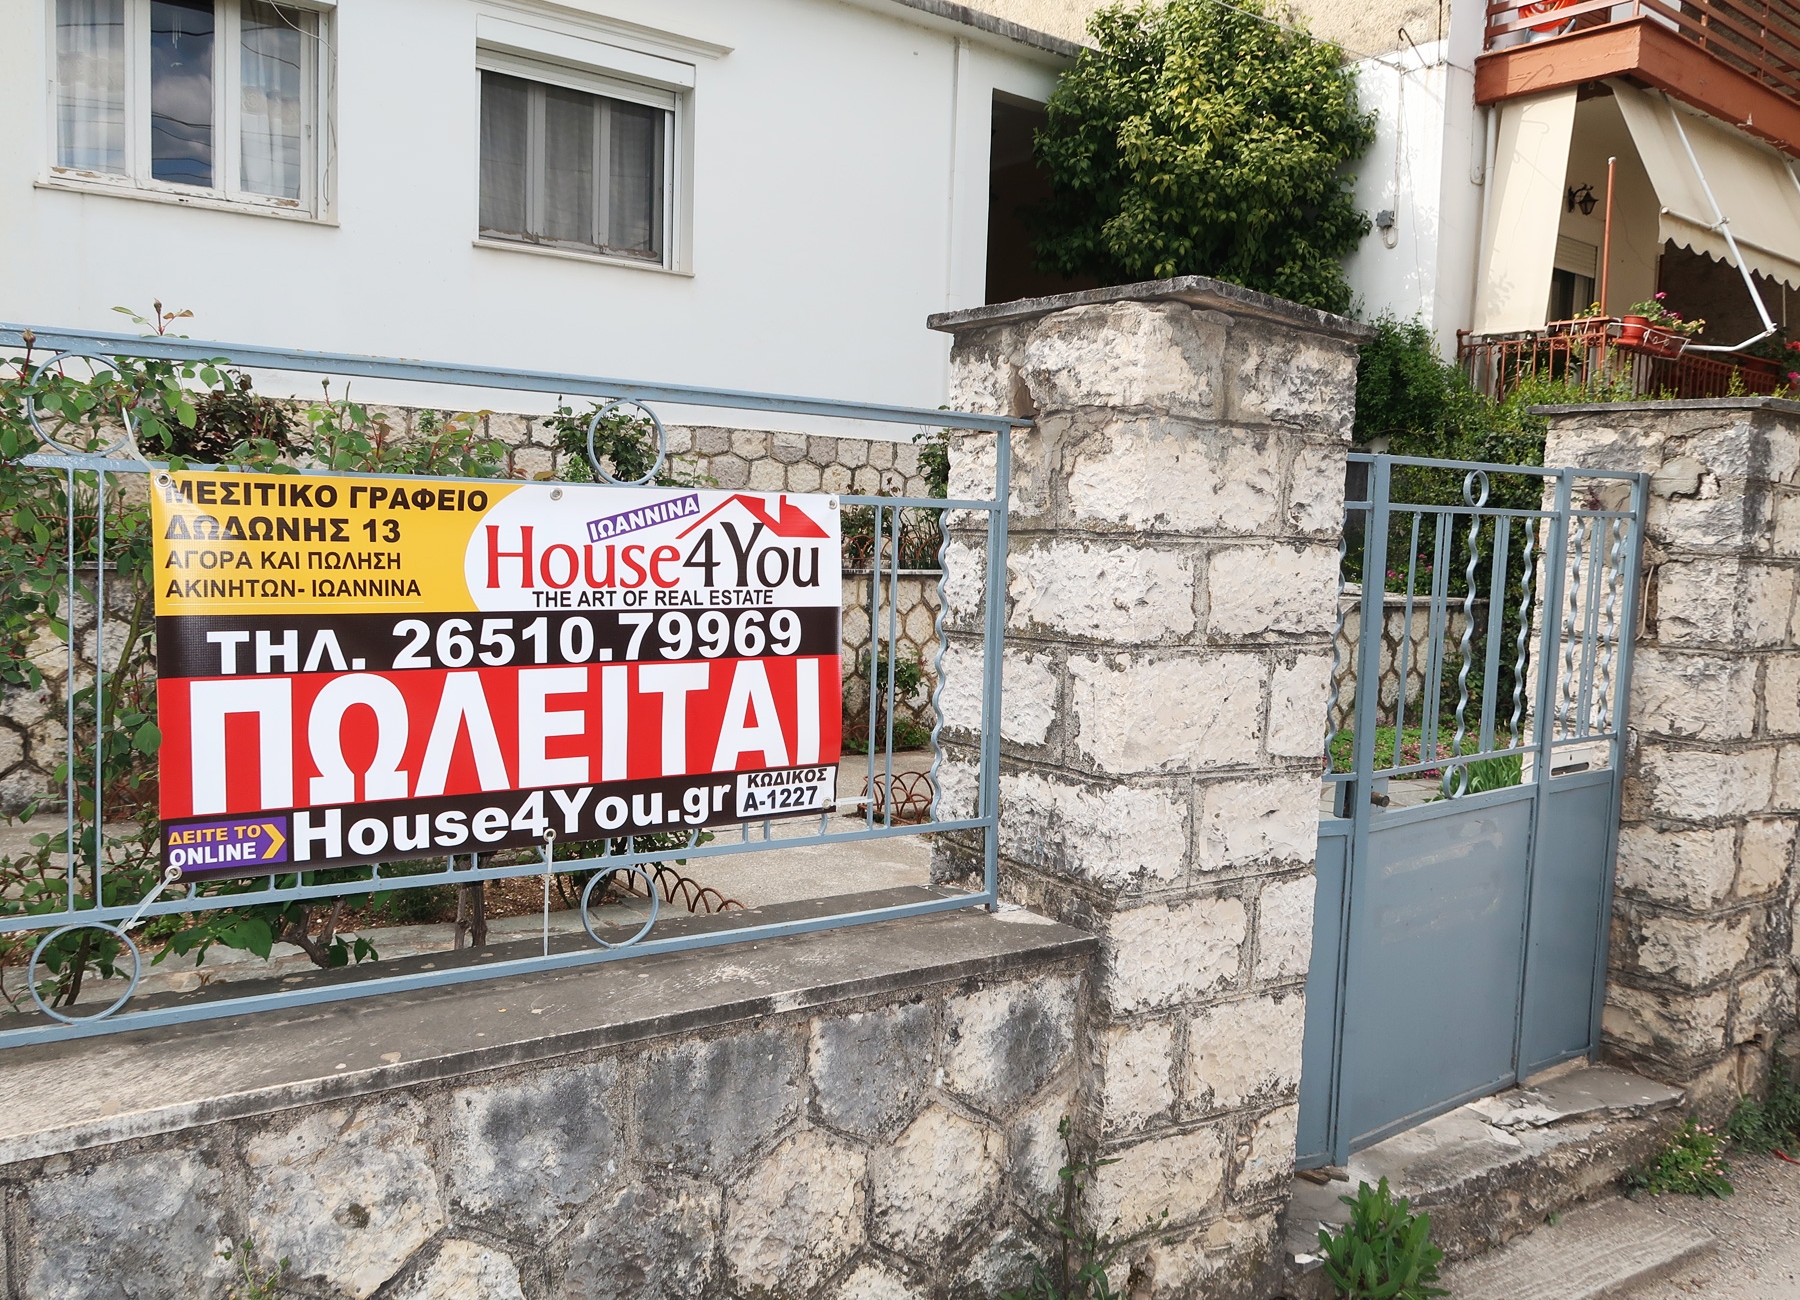 For sale a house of 116 sq.m. on a plot of 353 sq.m. on Pandosia Street in Ioannina 